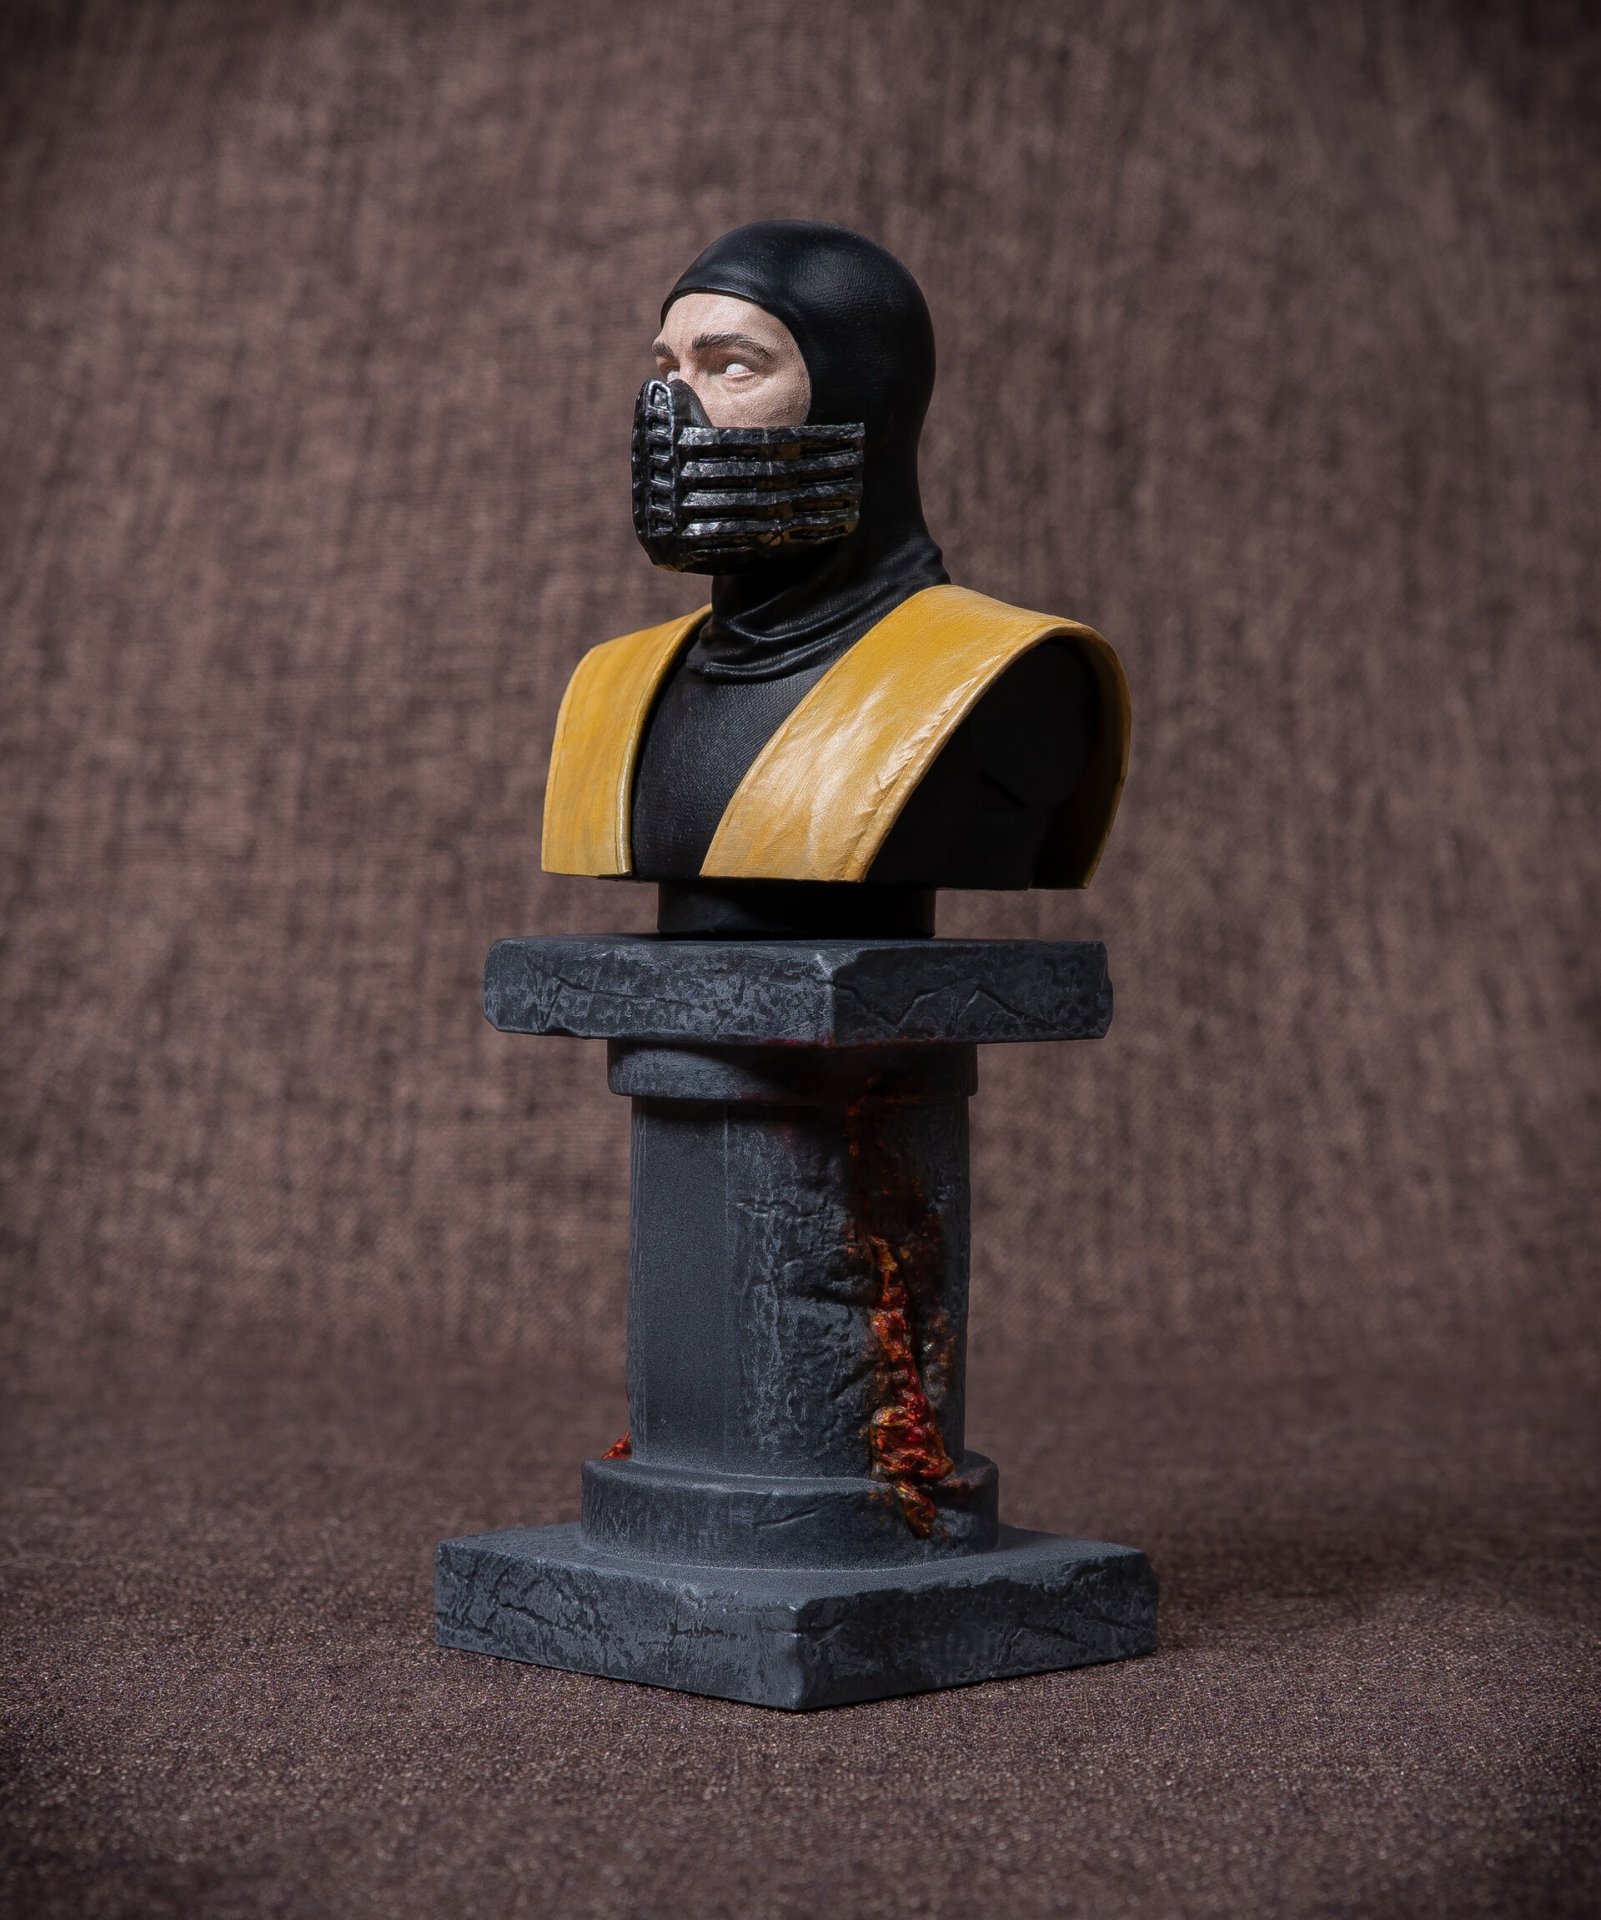 Скульптор показал бюсты персонажей Mortal Kombat сделанные на 3Dпринтере